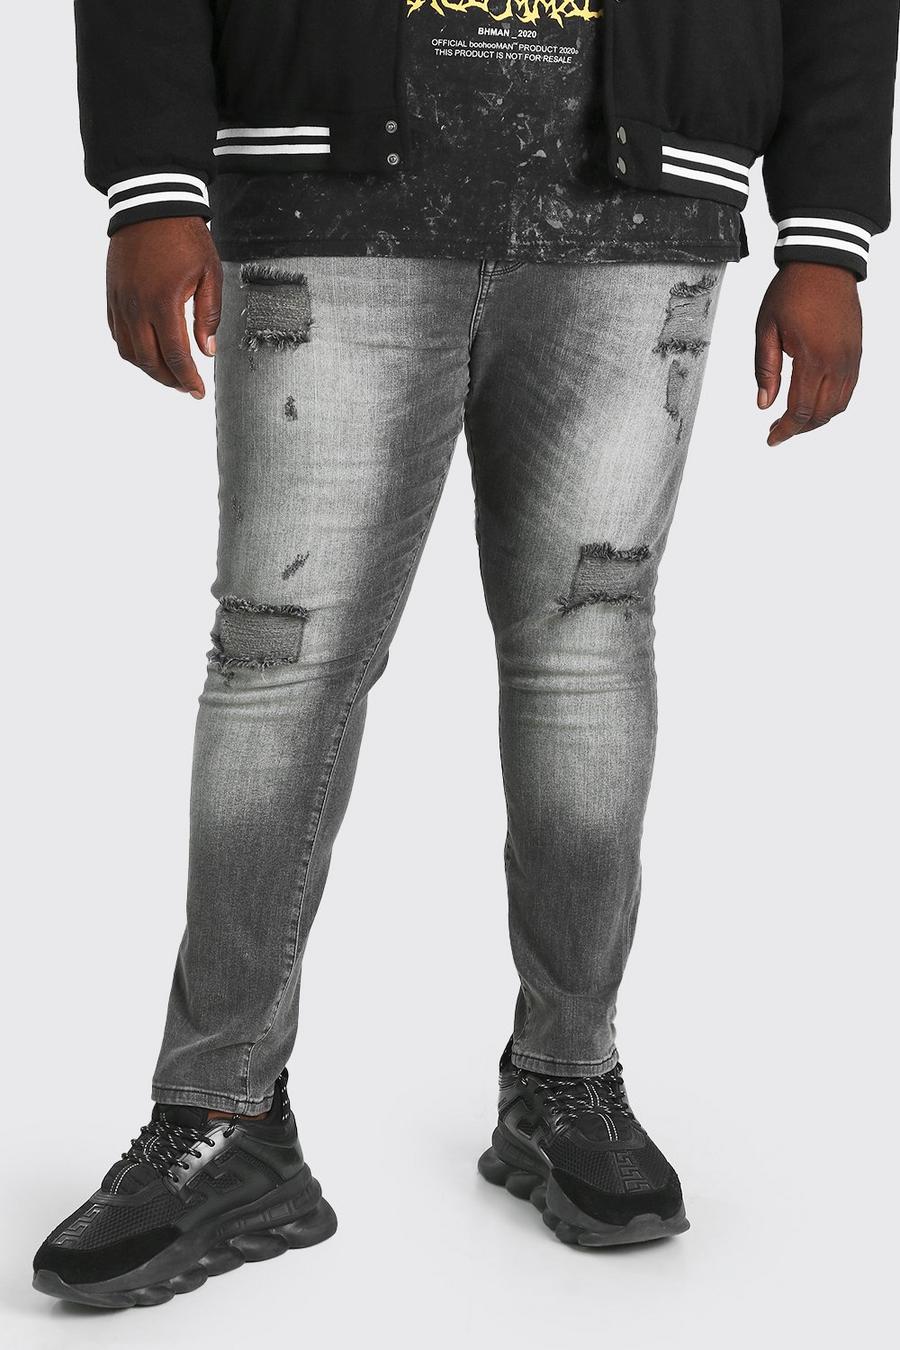 שחור דהוי סופר סקיני ג'ינס עם קרעים מרובים לגברים גדולים וגבוהים image number 1